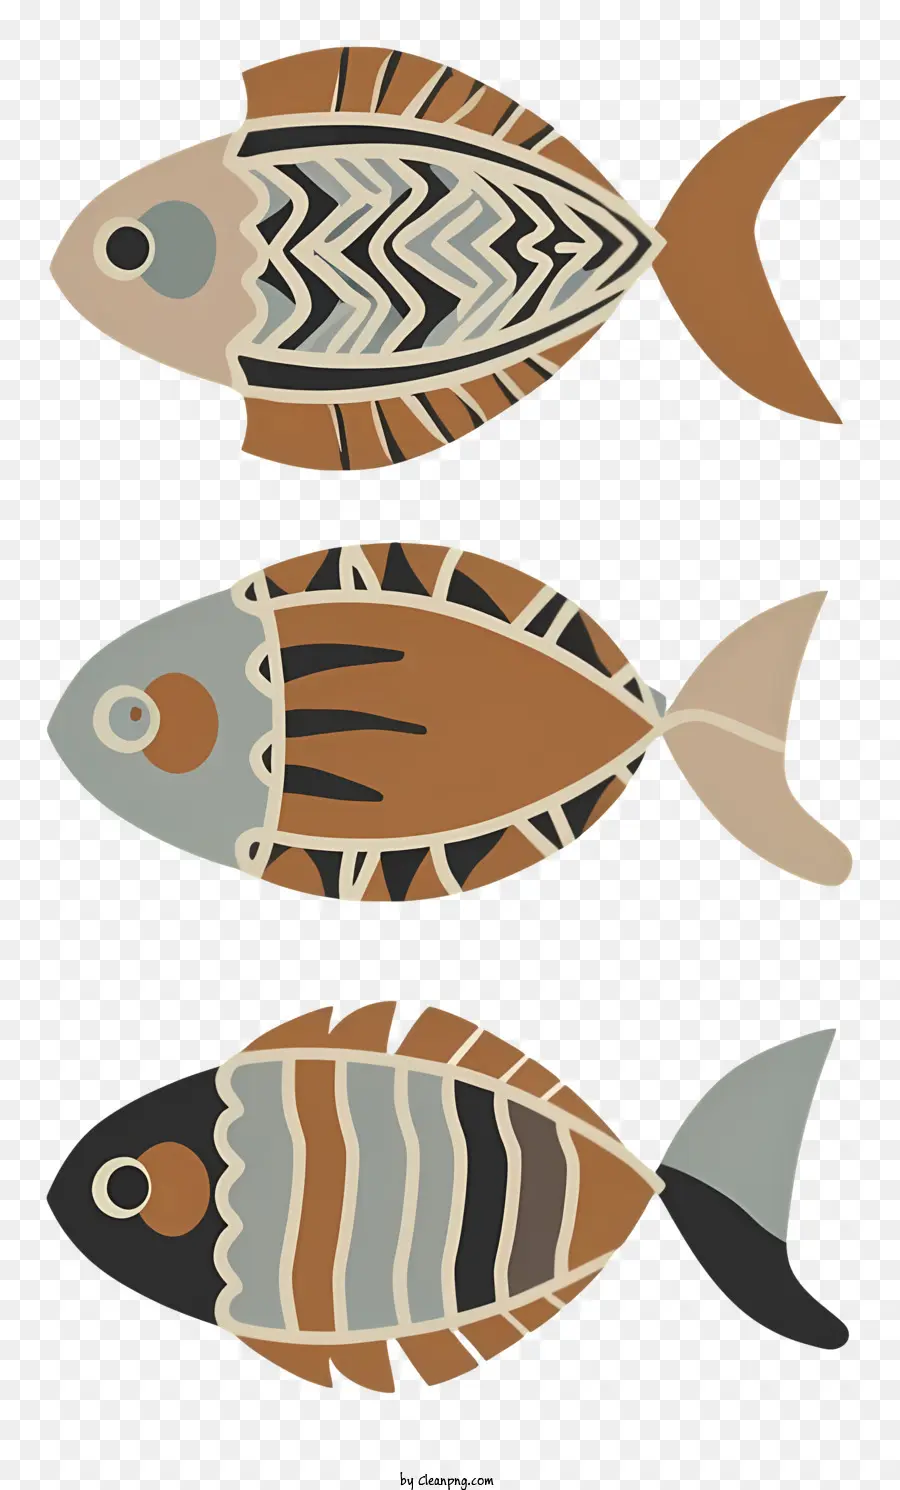 Fischmuster gestreifter Fisch blau und grün Fisch Orange und brauner Fisch rot und schwarzer Fisch - Drei Fische mit unterschiedlichen gestreiften Mustern und Formen